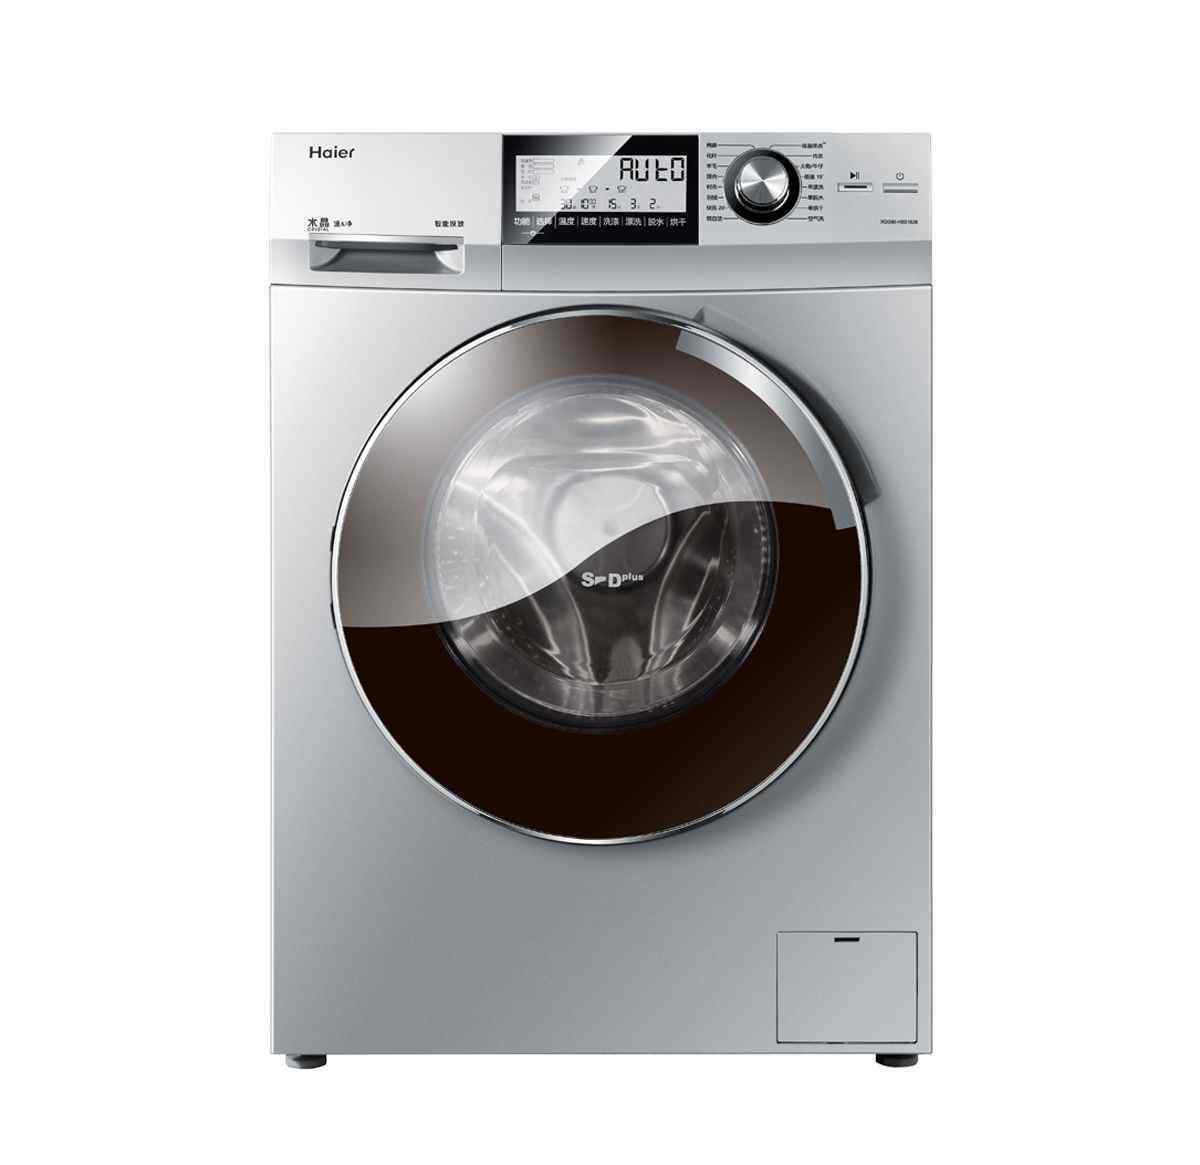 洗衣机怎么清洗干净 如何清洗洗衣机才干净 家庭必备洗衣机清洗方法